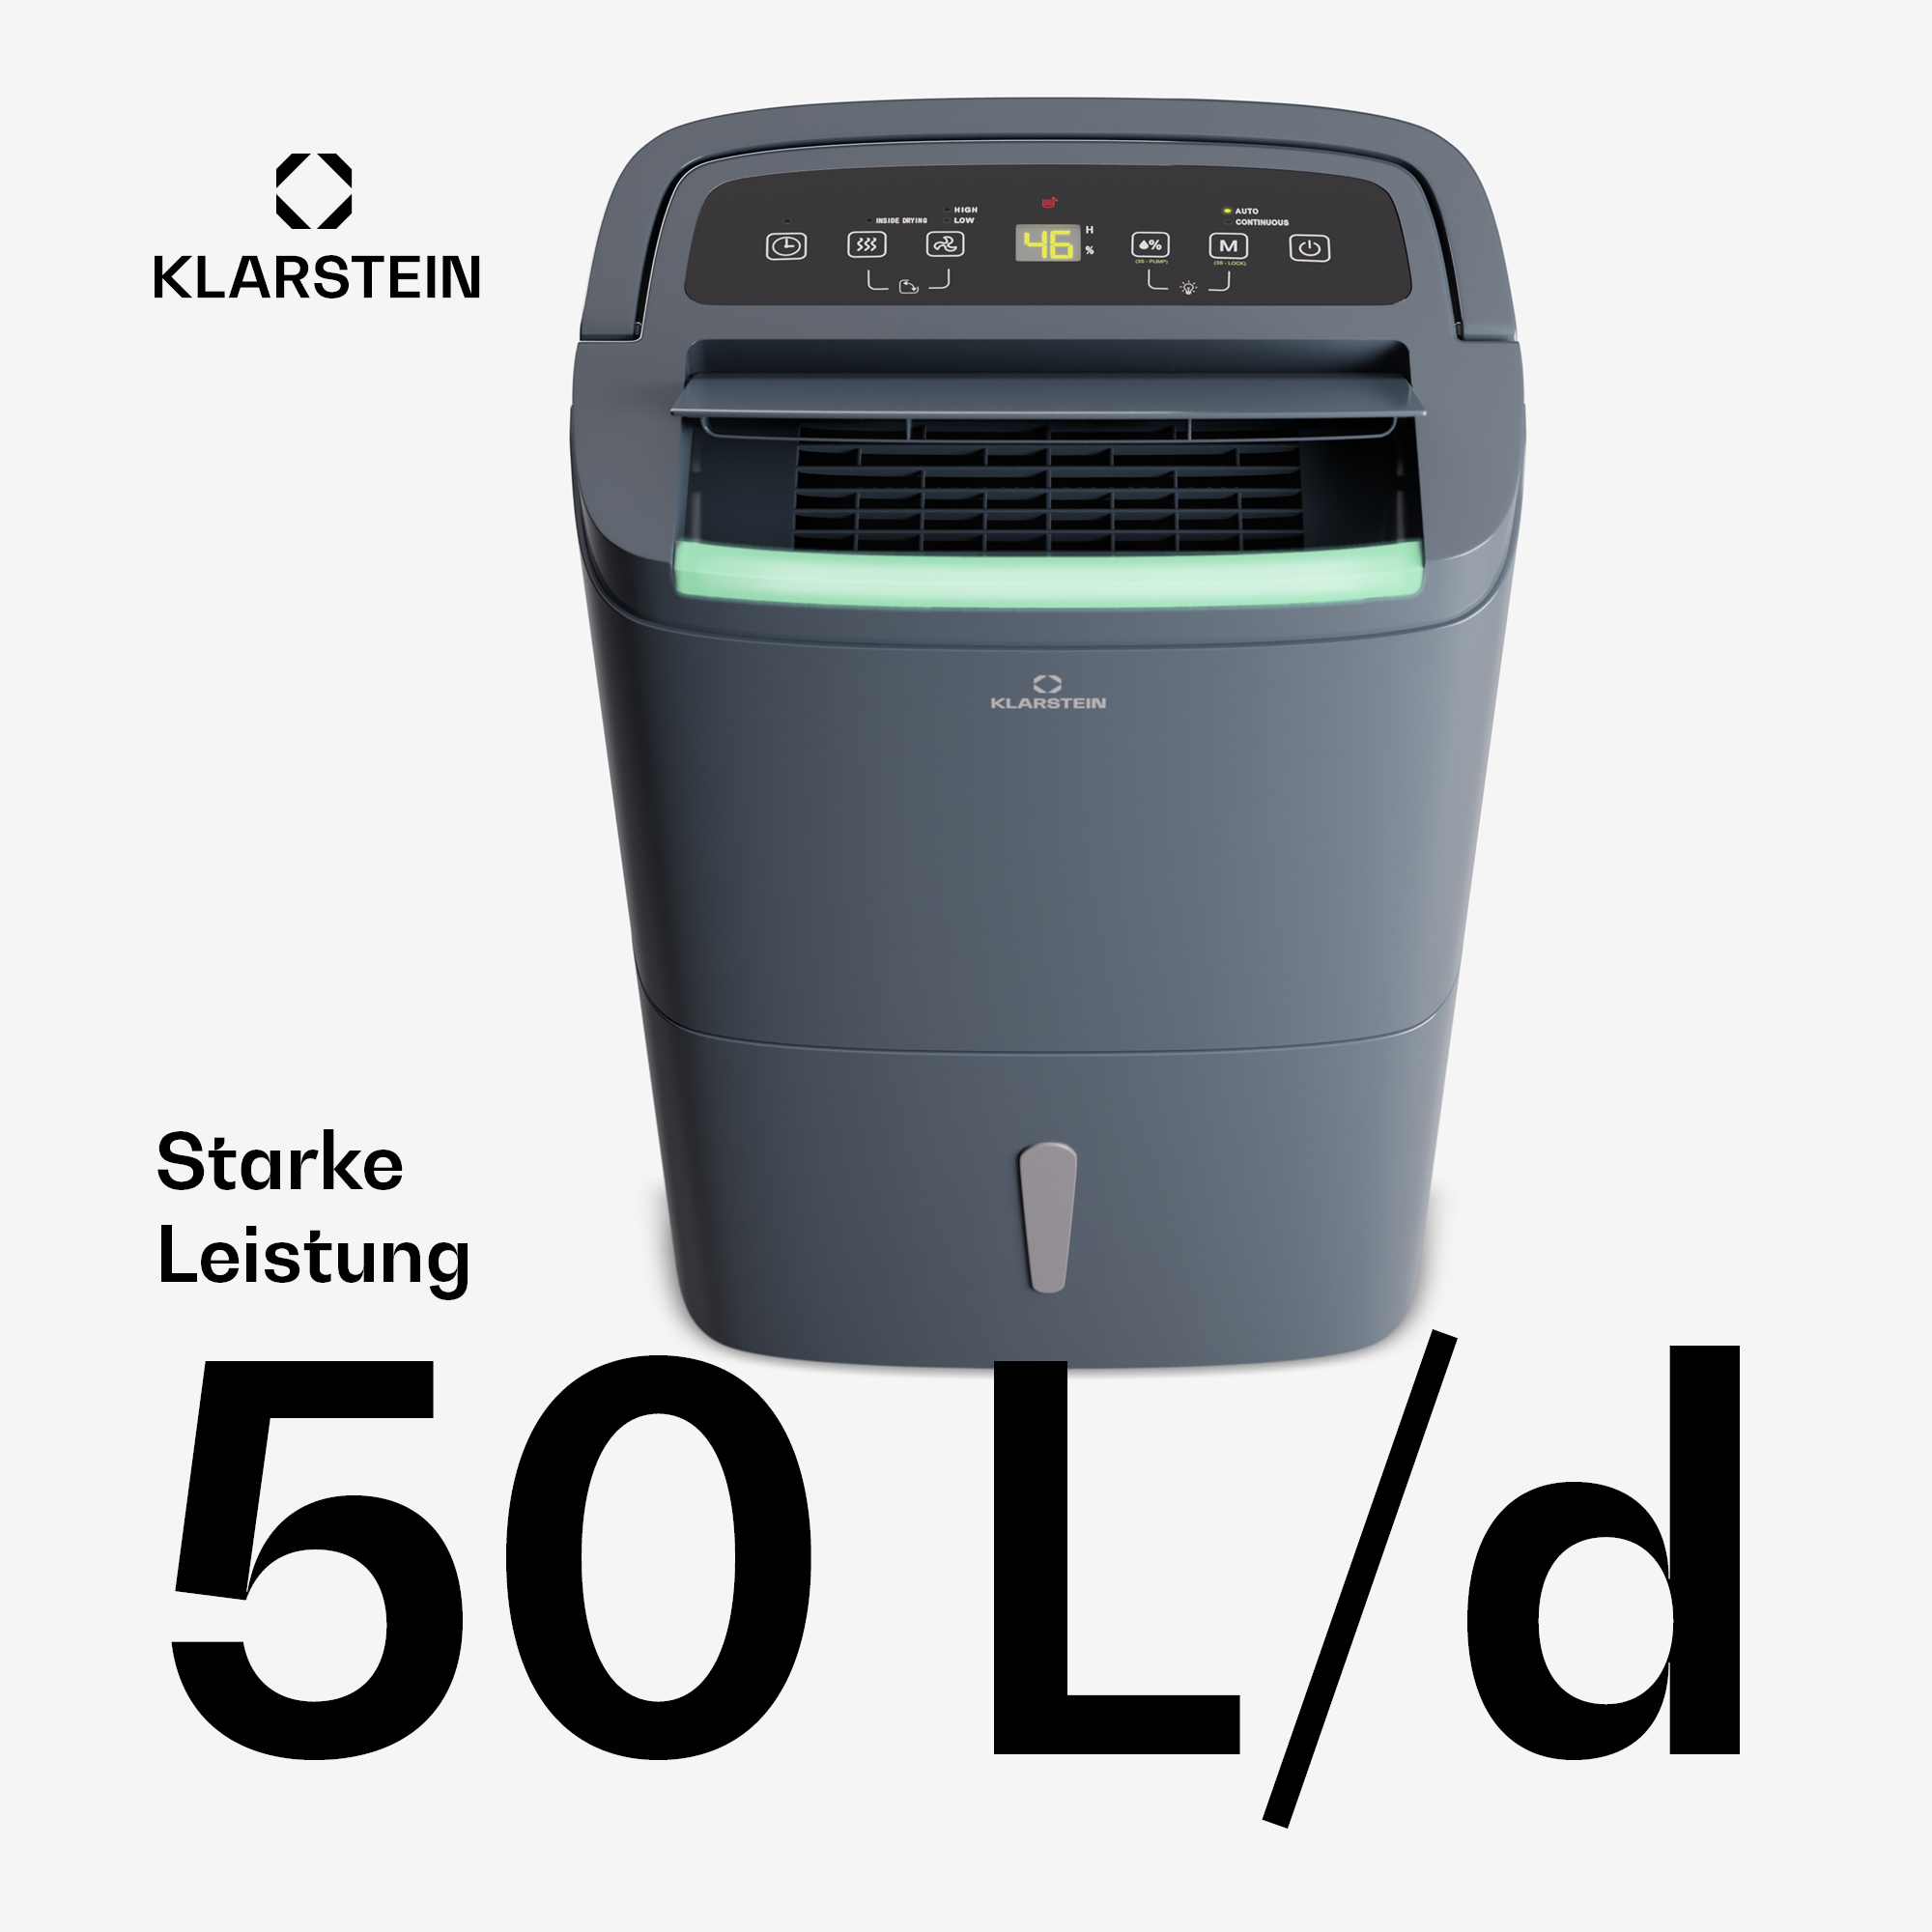 Connect Anthrazit DryFy KLARSTEIN Raumgröße: Watt, (750 Luftentfeuchter m²) 55